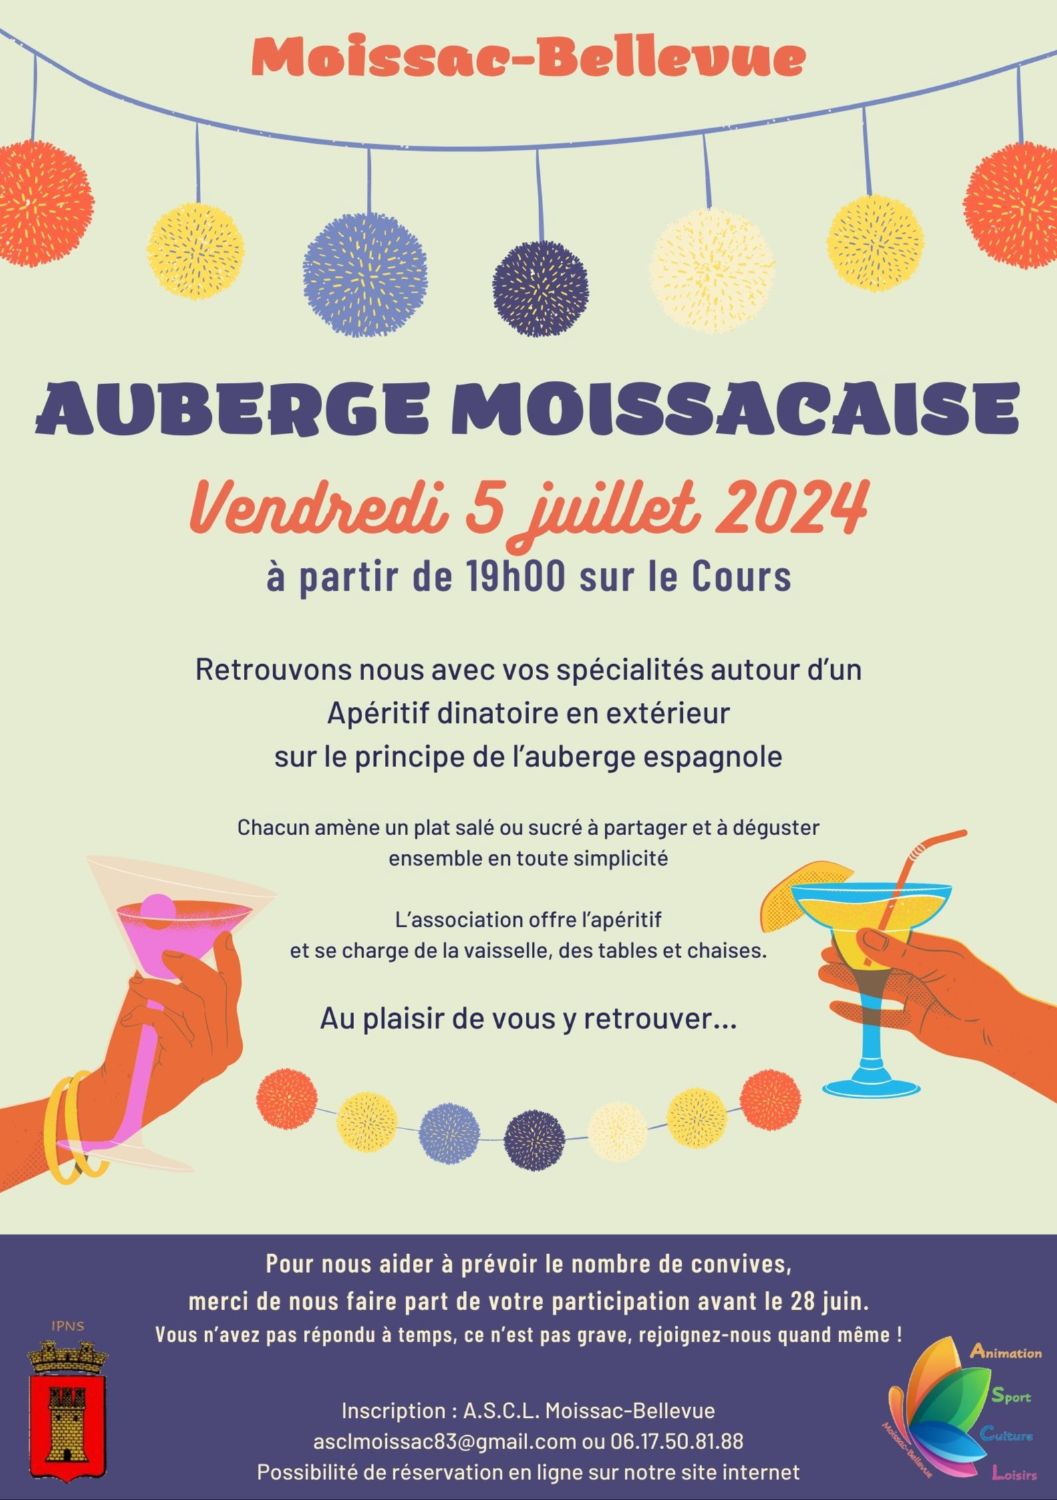 Auberge Moissacaise 2024